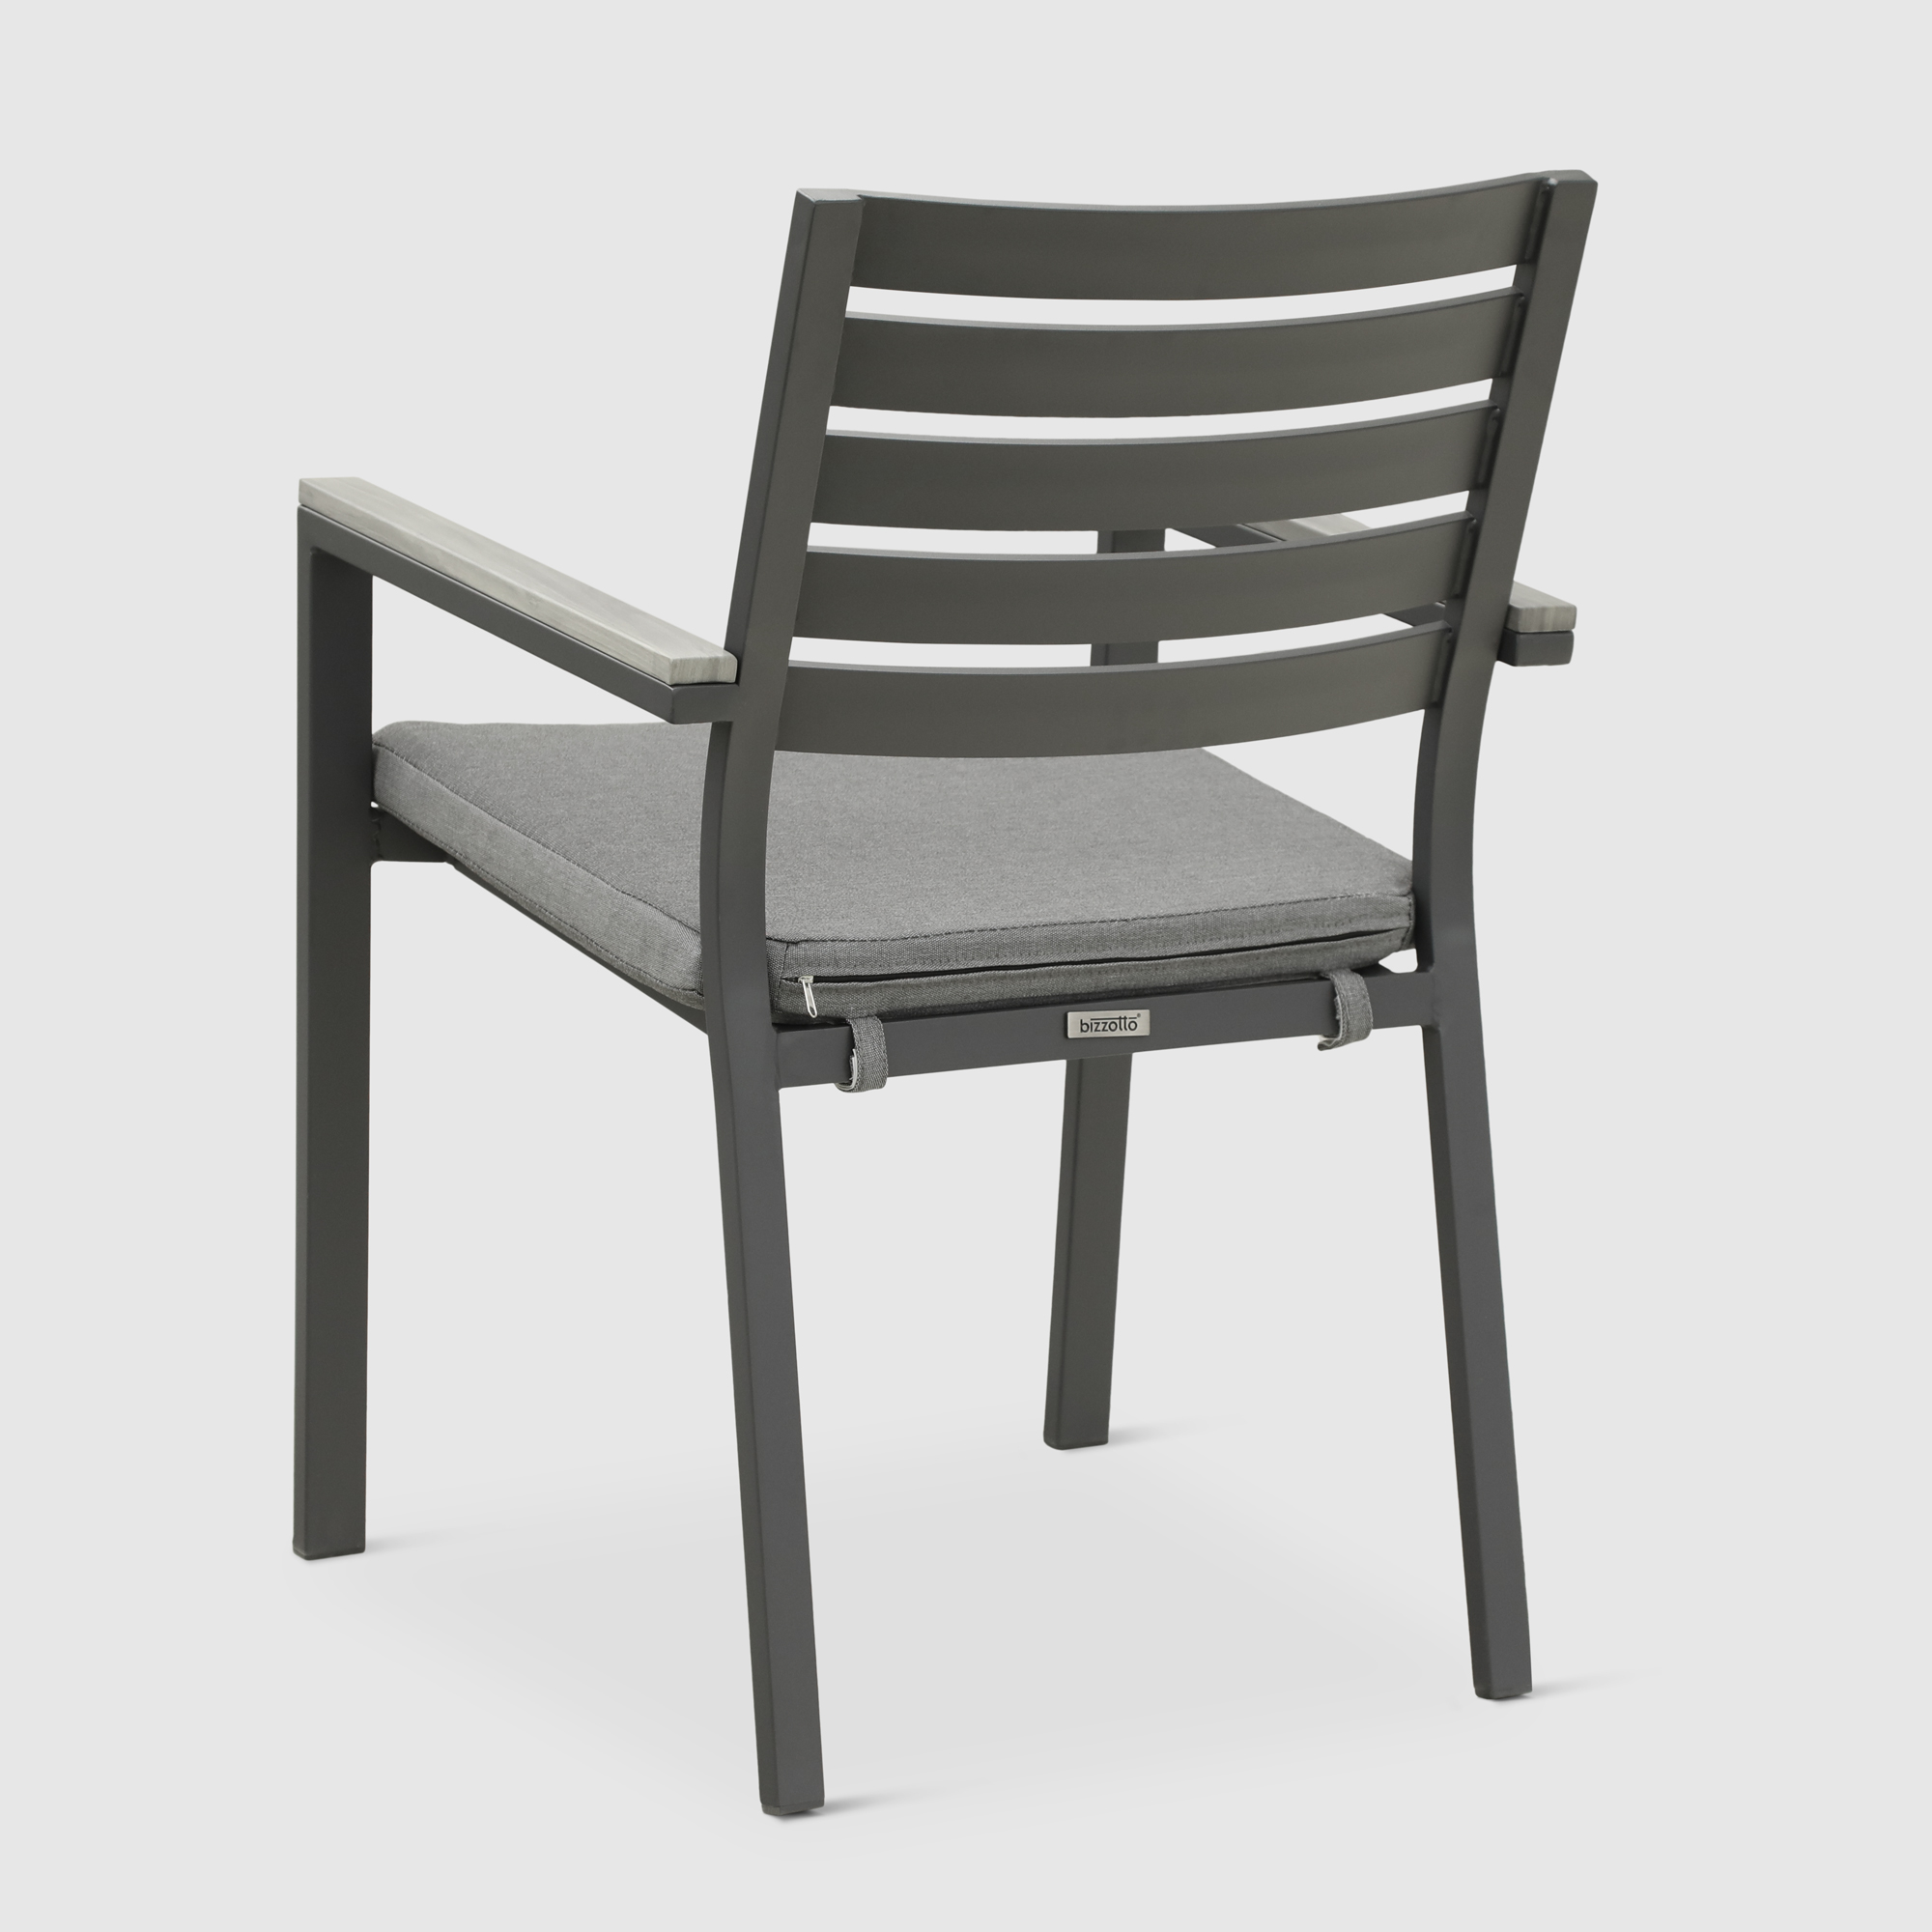 Комплект мебели Bizzotto угольный 11 предметов, цвет серый, размер 56х62х88 - фото 14